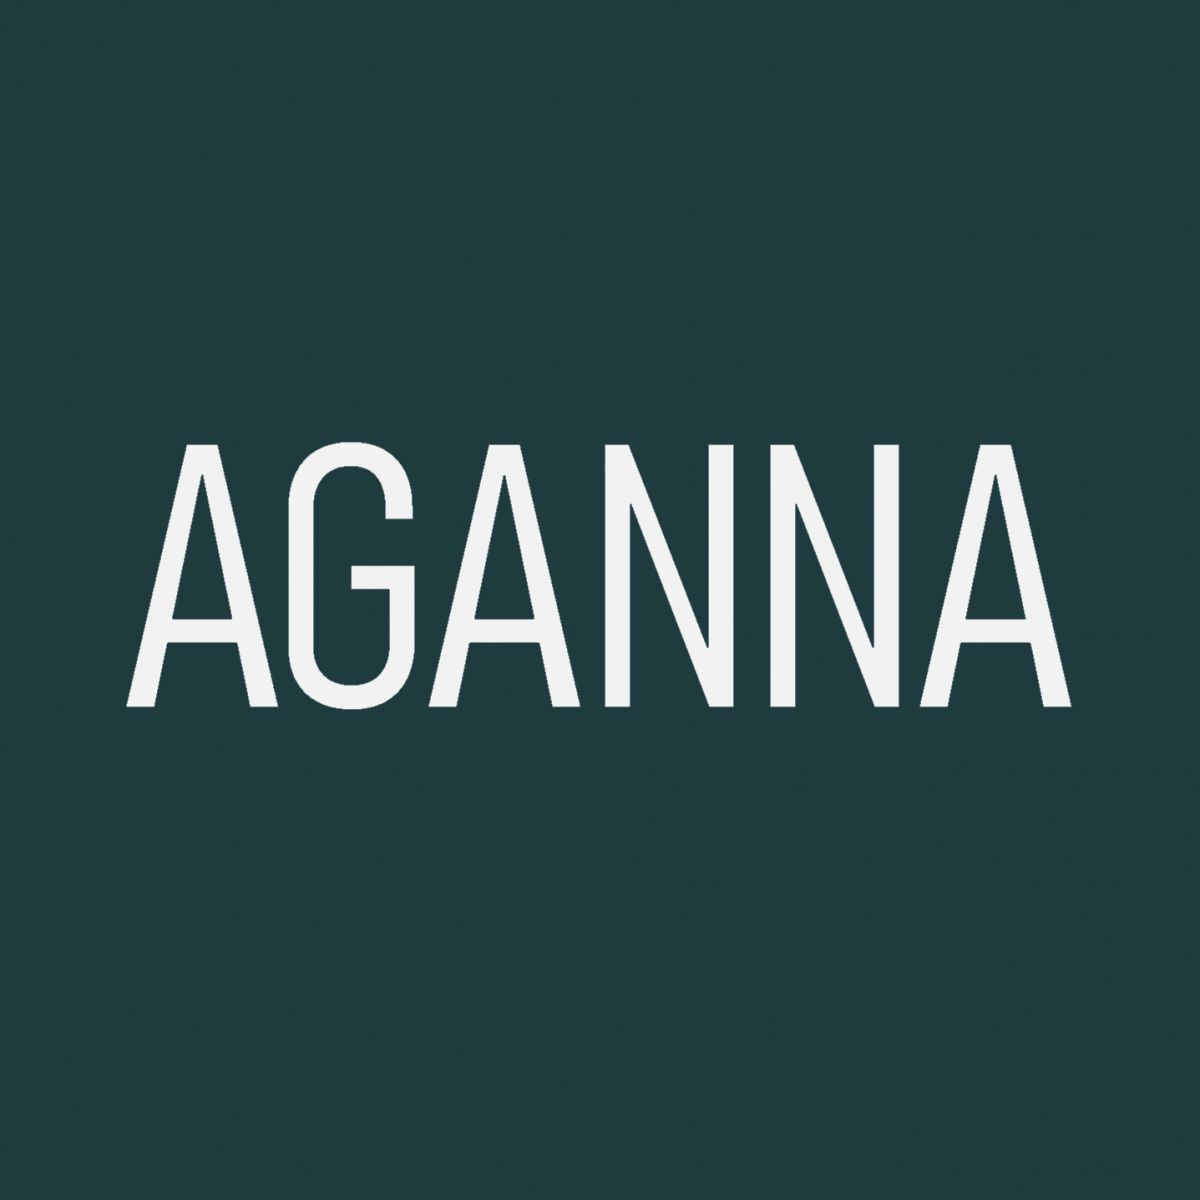 Aganna